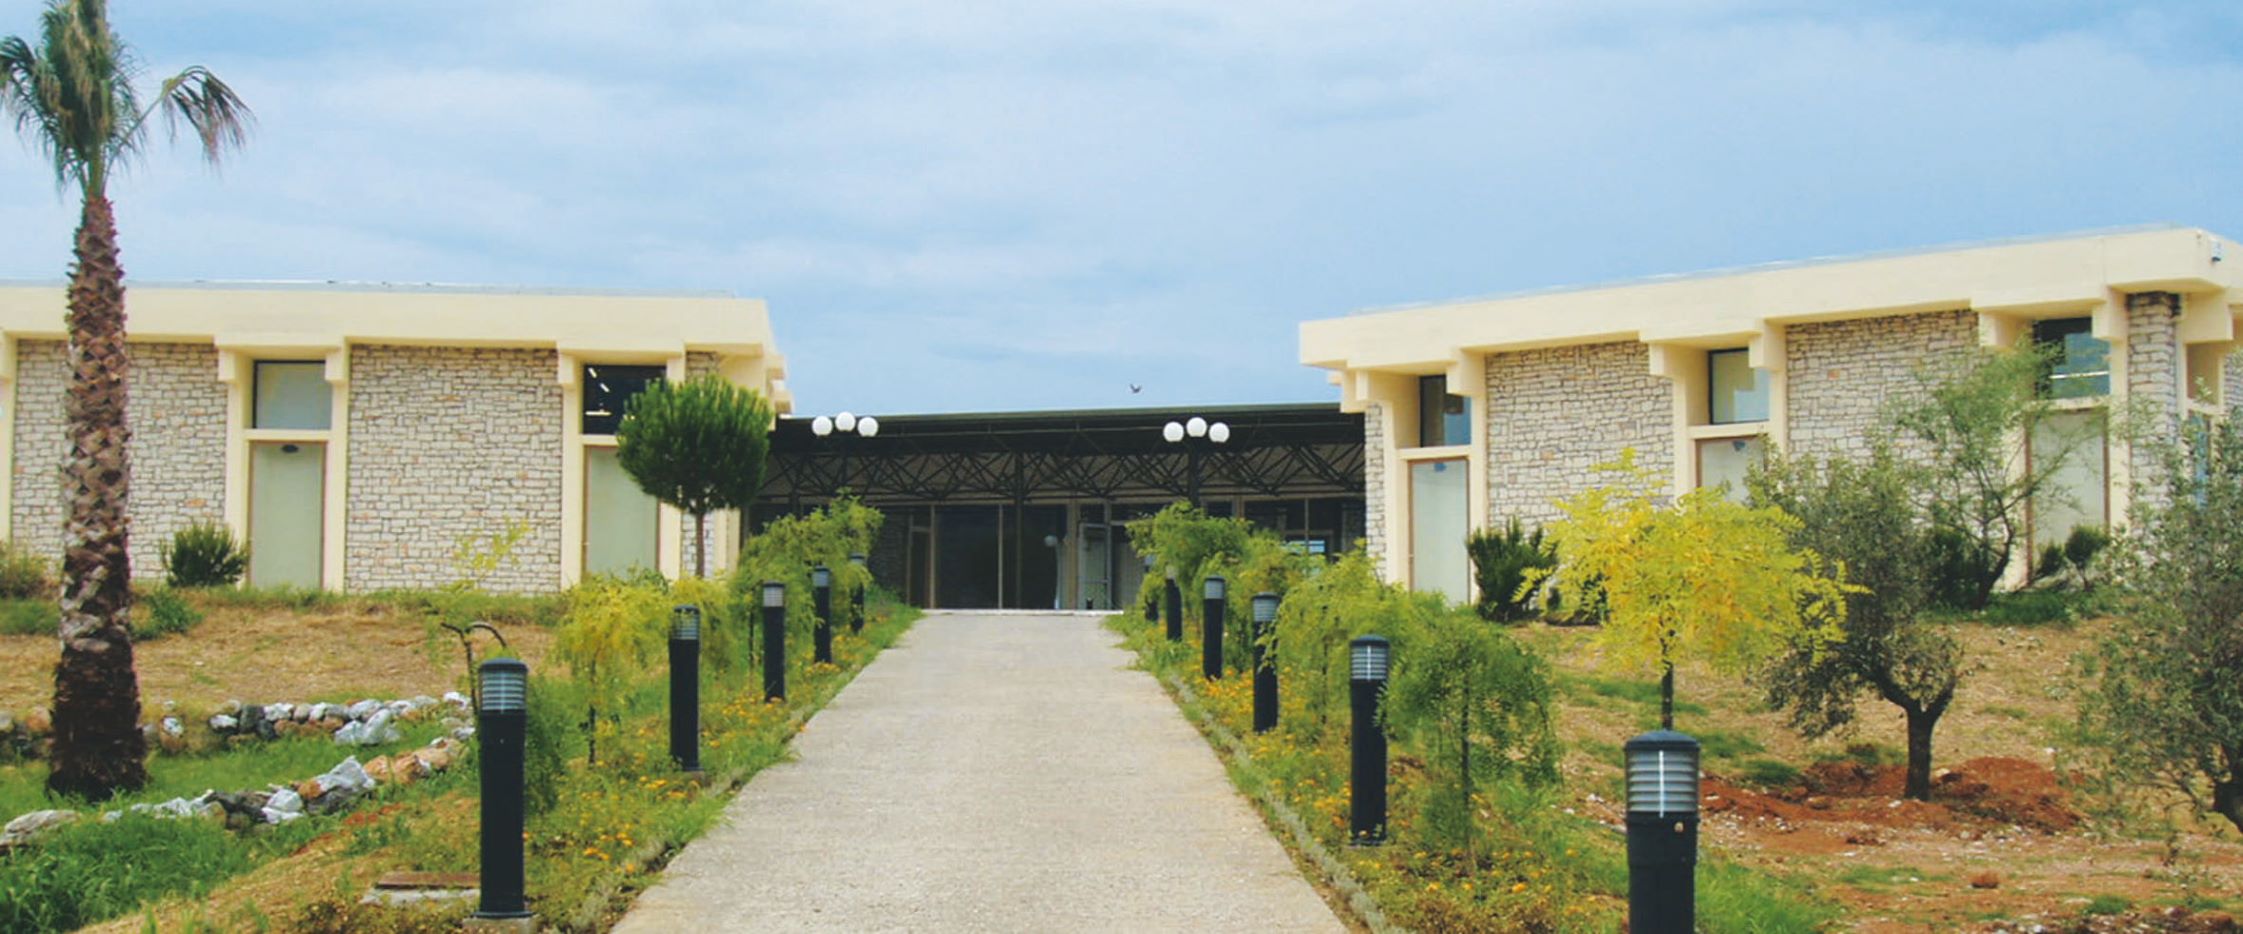 Το Μουσείο Βάσως Κατράκη στο Αιτωλικό